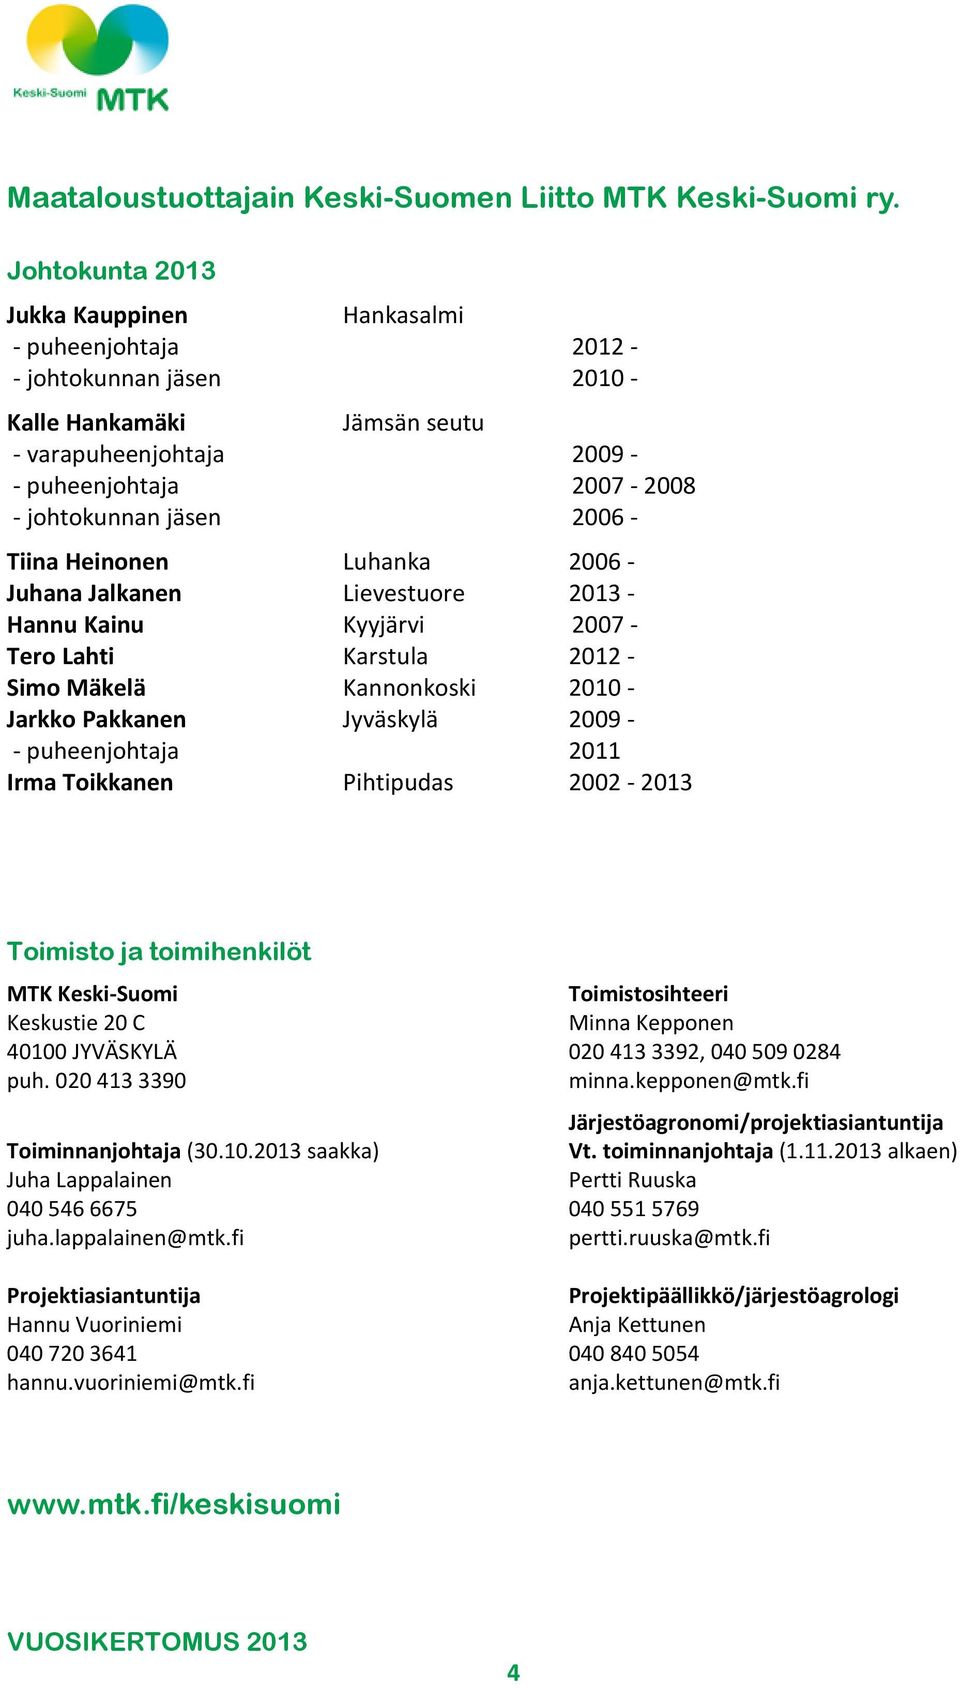 - Tiina Heinonen Luhanka 2006 - Juhana Jalkanen Lievestuore 2013 - Hannu Kainu Kyyjärvi 2007 - Tero Lahti Karstula 2012 - Simo Mäkelä Kannonkoski 2010 - Jarkko Pakkanen Jyväskylä 2009 - -